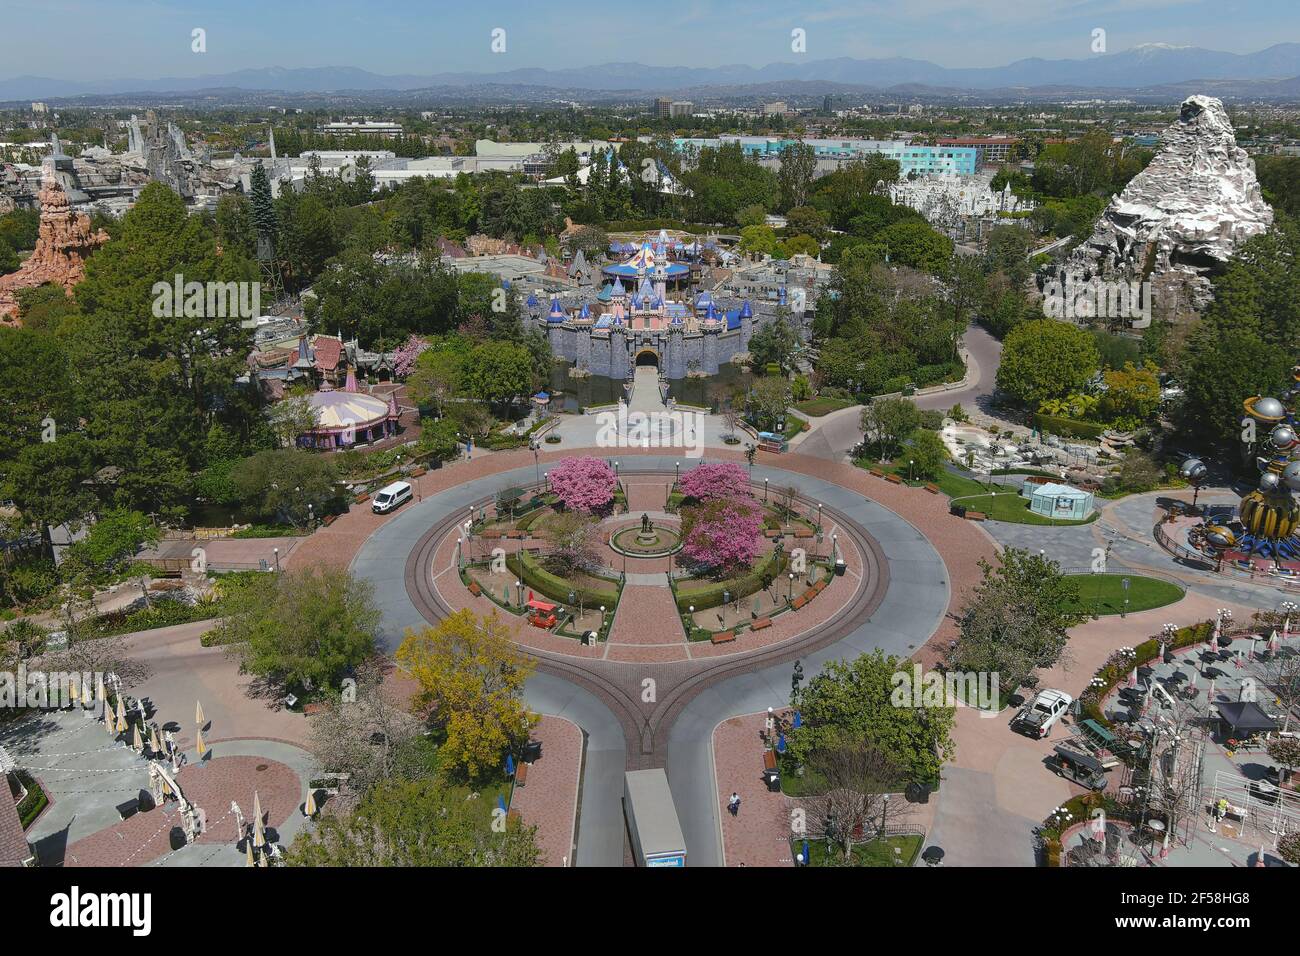 Une vue aérienne du Sleeping Beauty Castle à Disneyland Park, le mercredi 24 mars 2021, à Anaheim, Calif. Banque D'Images